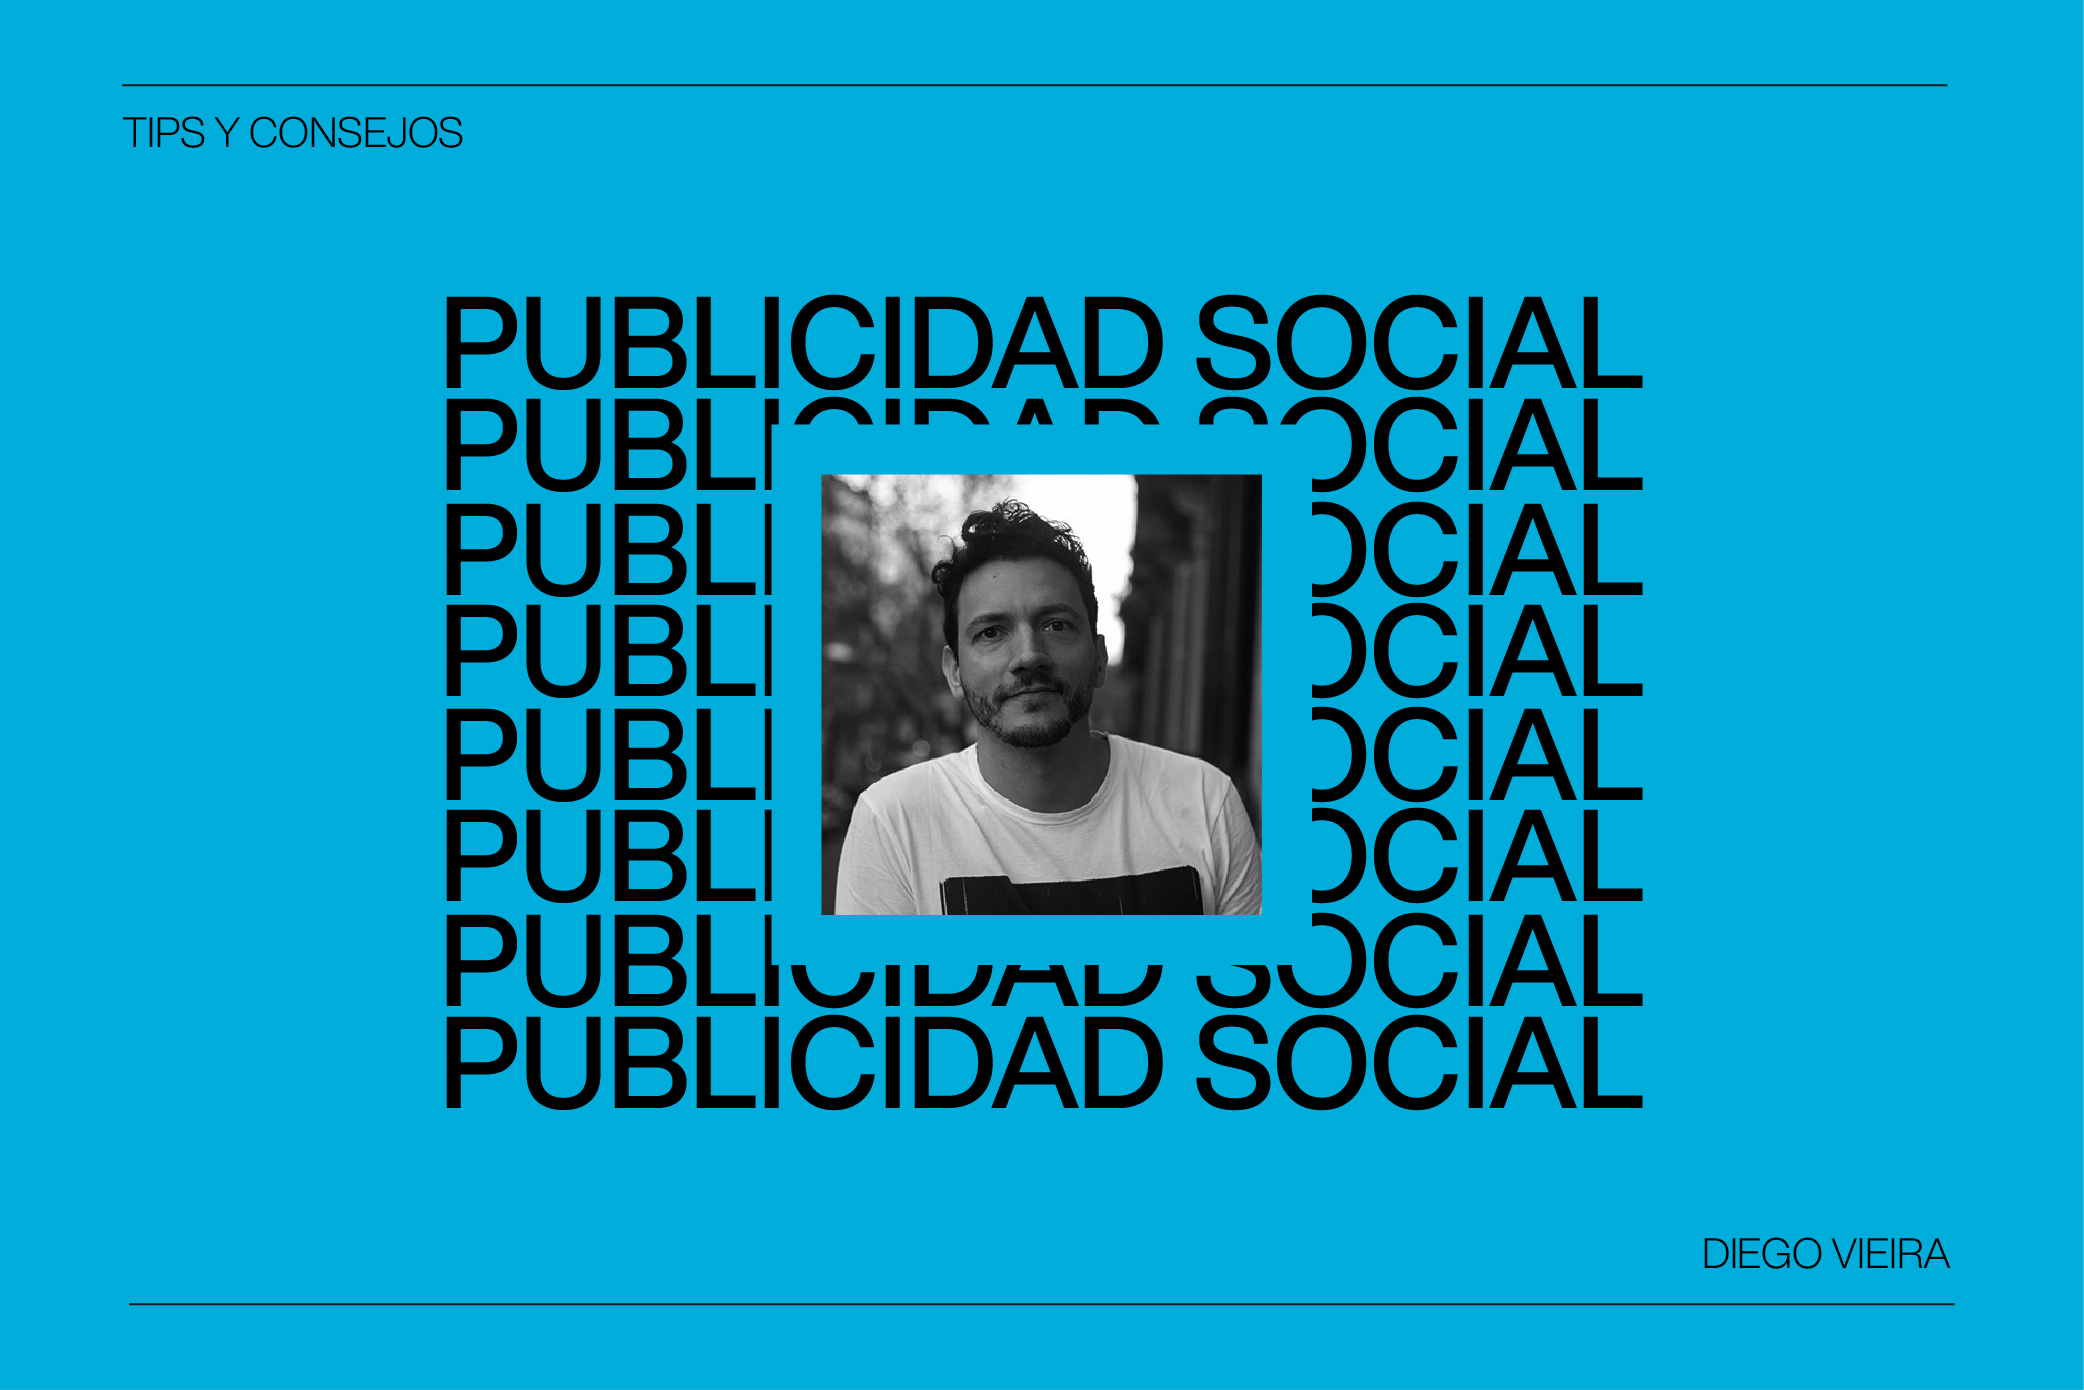 ¿Qué es la Publicidad Social? Hablamos con Diego Vieira de Lola MullenLowe